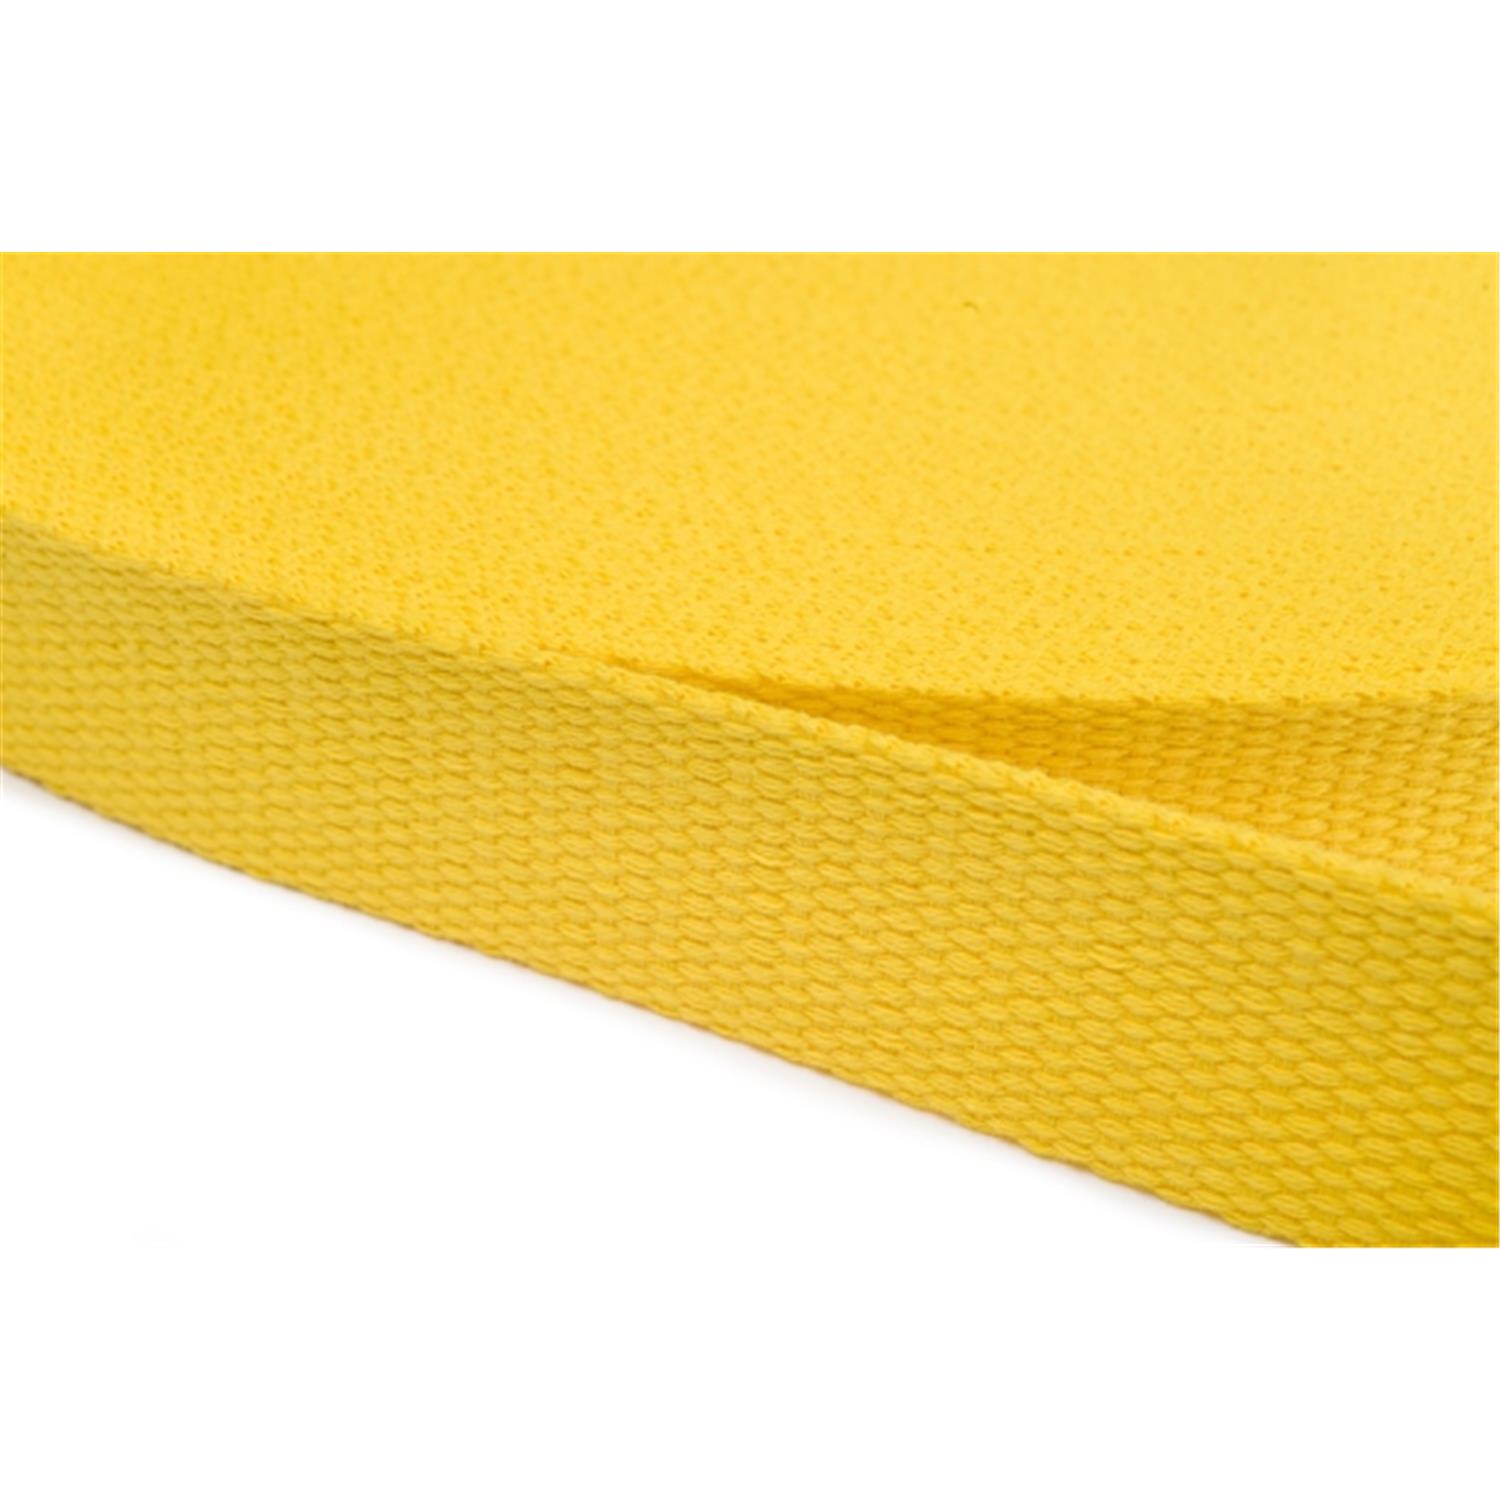 Gurtband aus Baumwolle 40mm in 20 Farben 05 - gelb 12 Meter